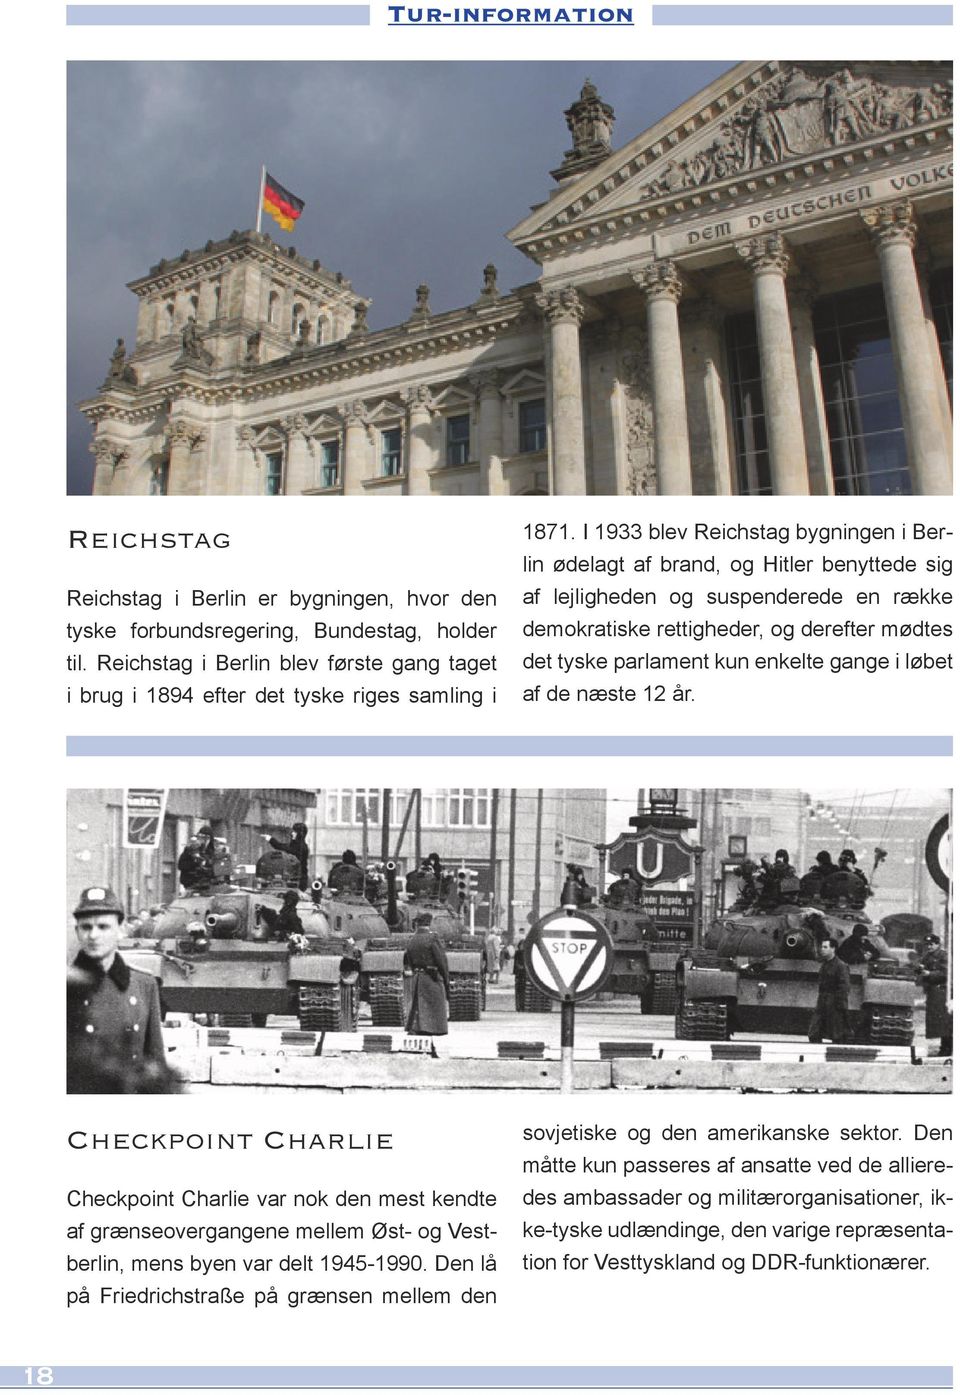 I 1933 blev Reichstag bygningen i Berlin ødelagt af brand, og Hitler benyttede sig af lejligheden og suspenderede en række demokratiske rettigheder, og derefter mødtes det tyske parlament kun enkelte